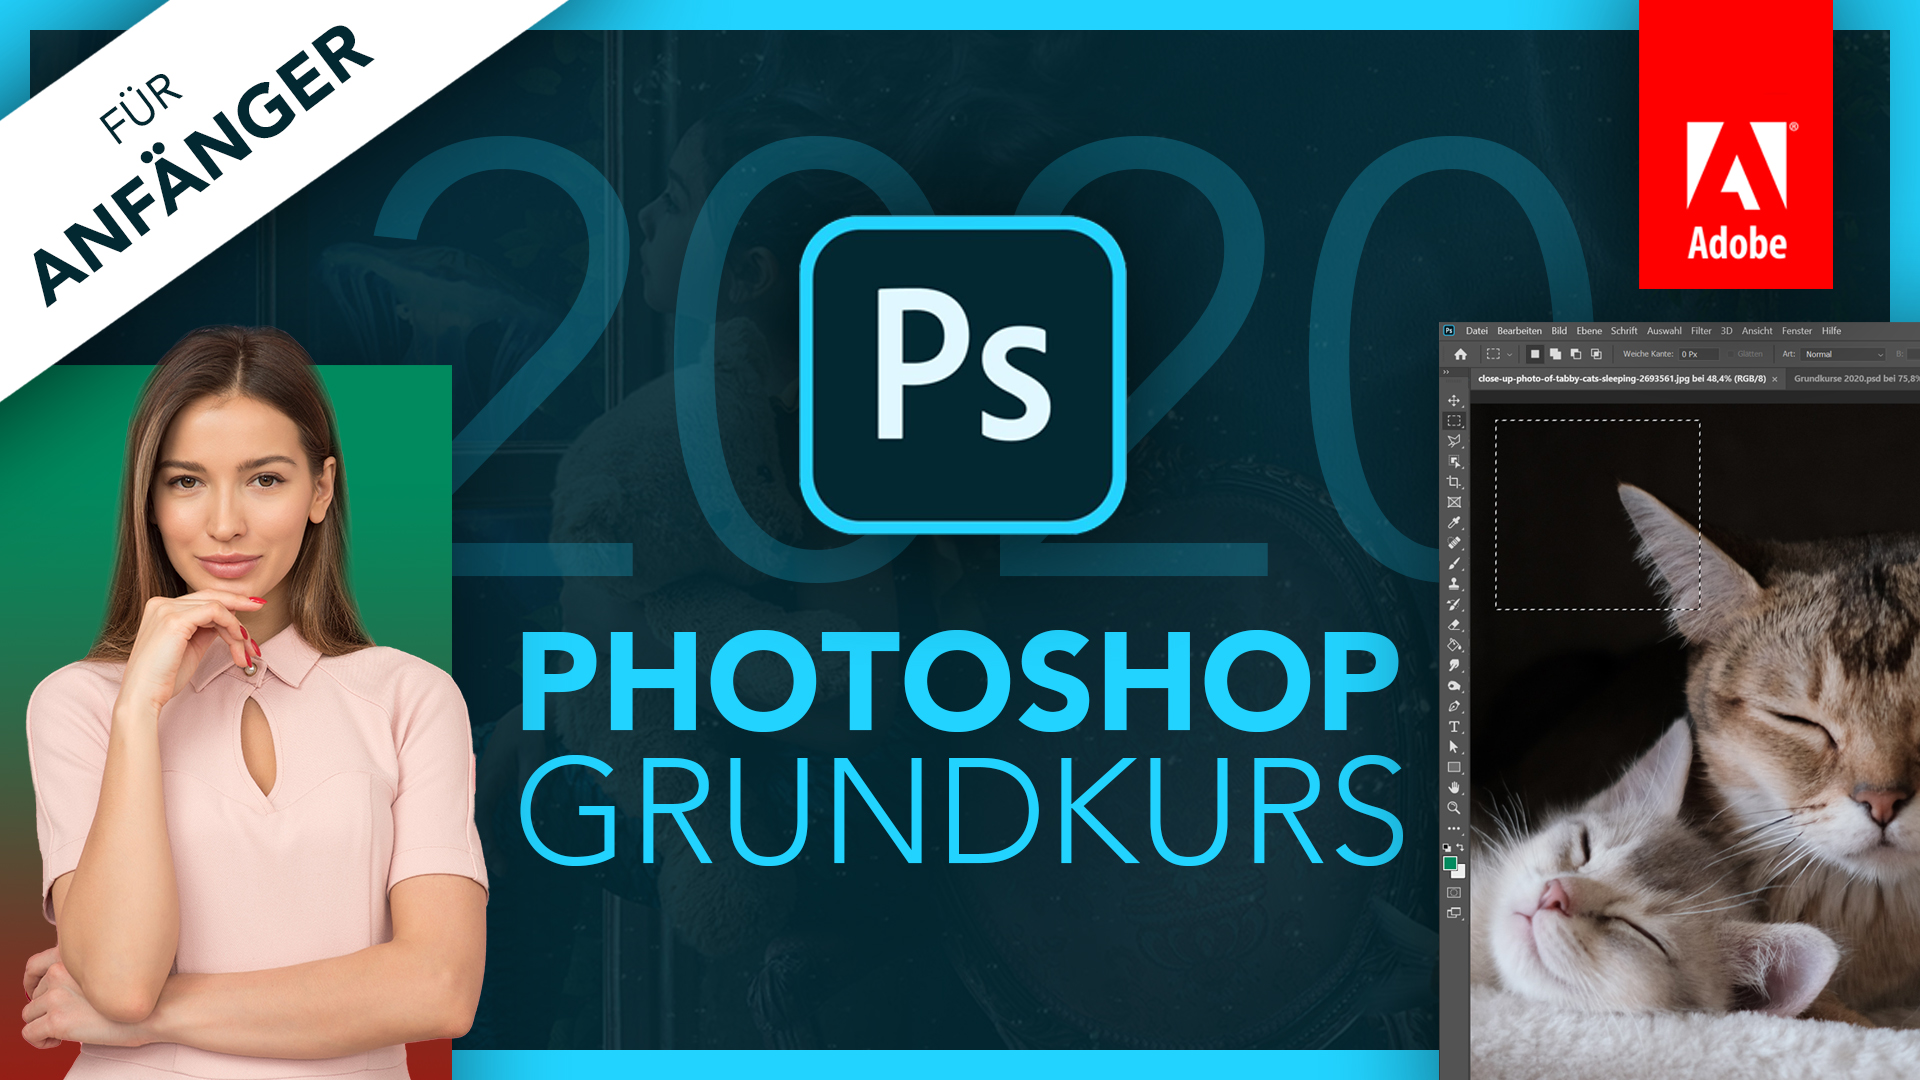 Adobe Photoshop 2020 (Grundkurs für Anfänger) Deutsch